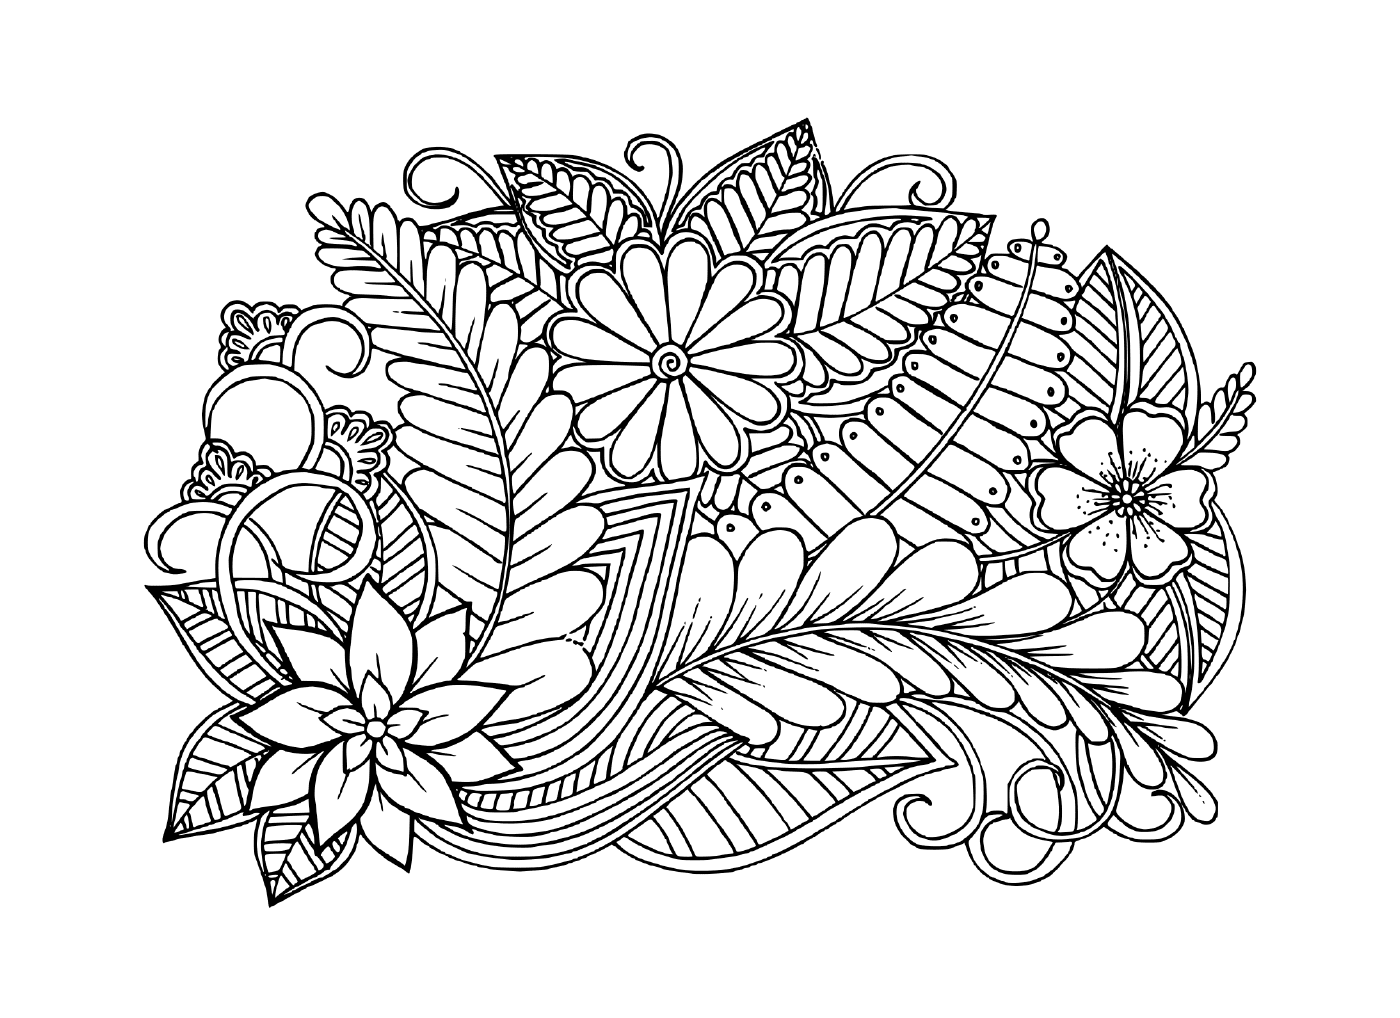 coloriage Doodle motif floral en noir et blanc adulte